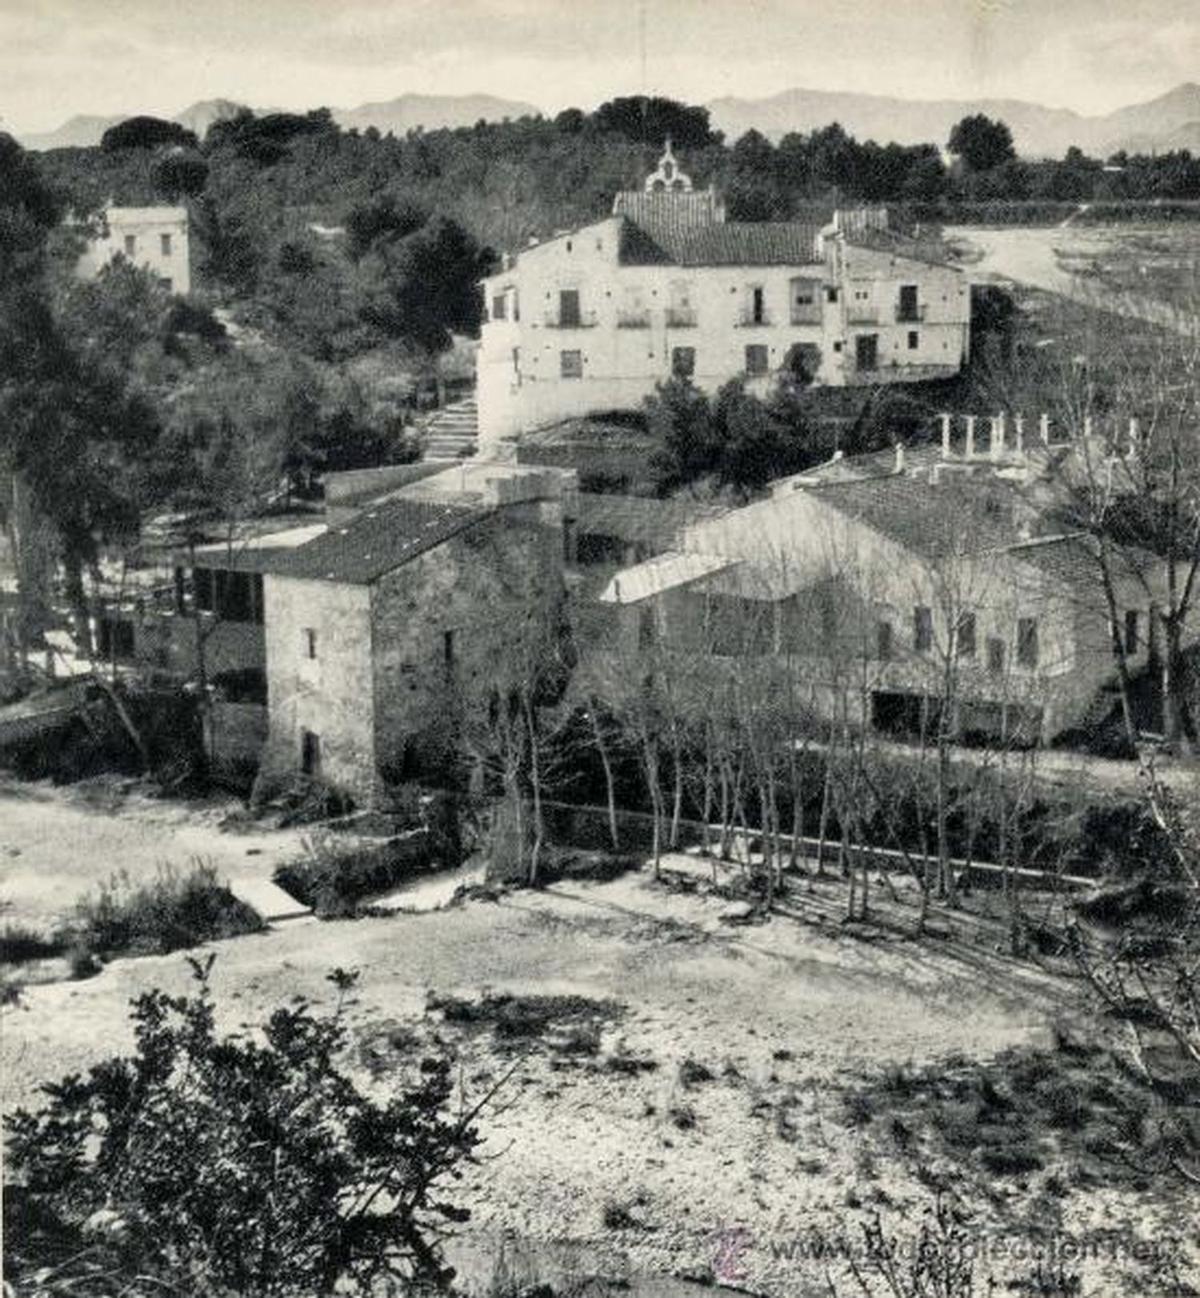 Imagen de principios del siglo XX, con la ermita al fondo y una escasa vegetación en la zona.